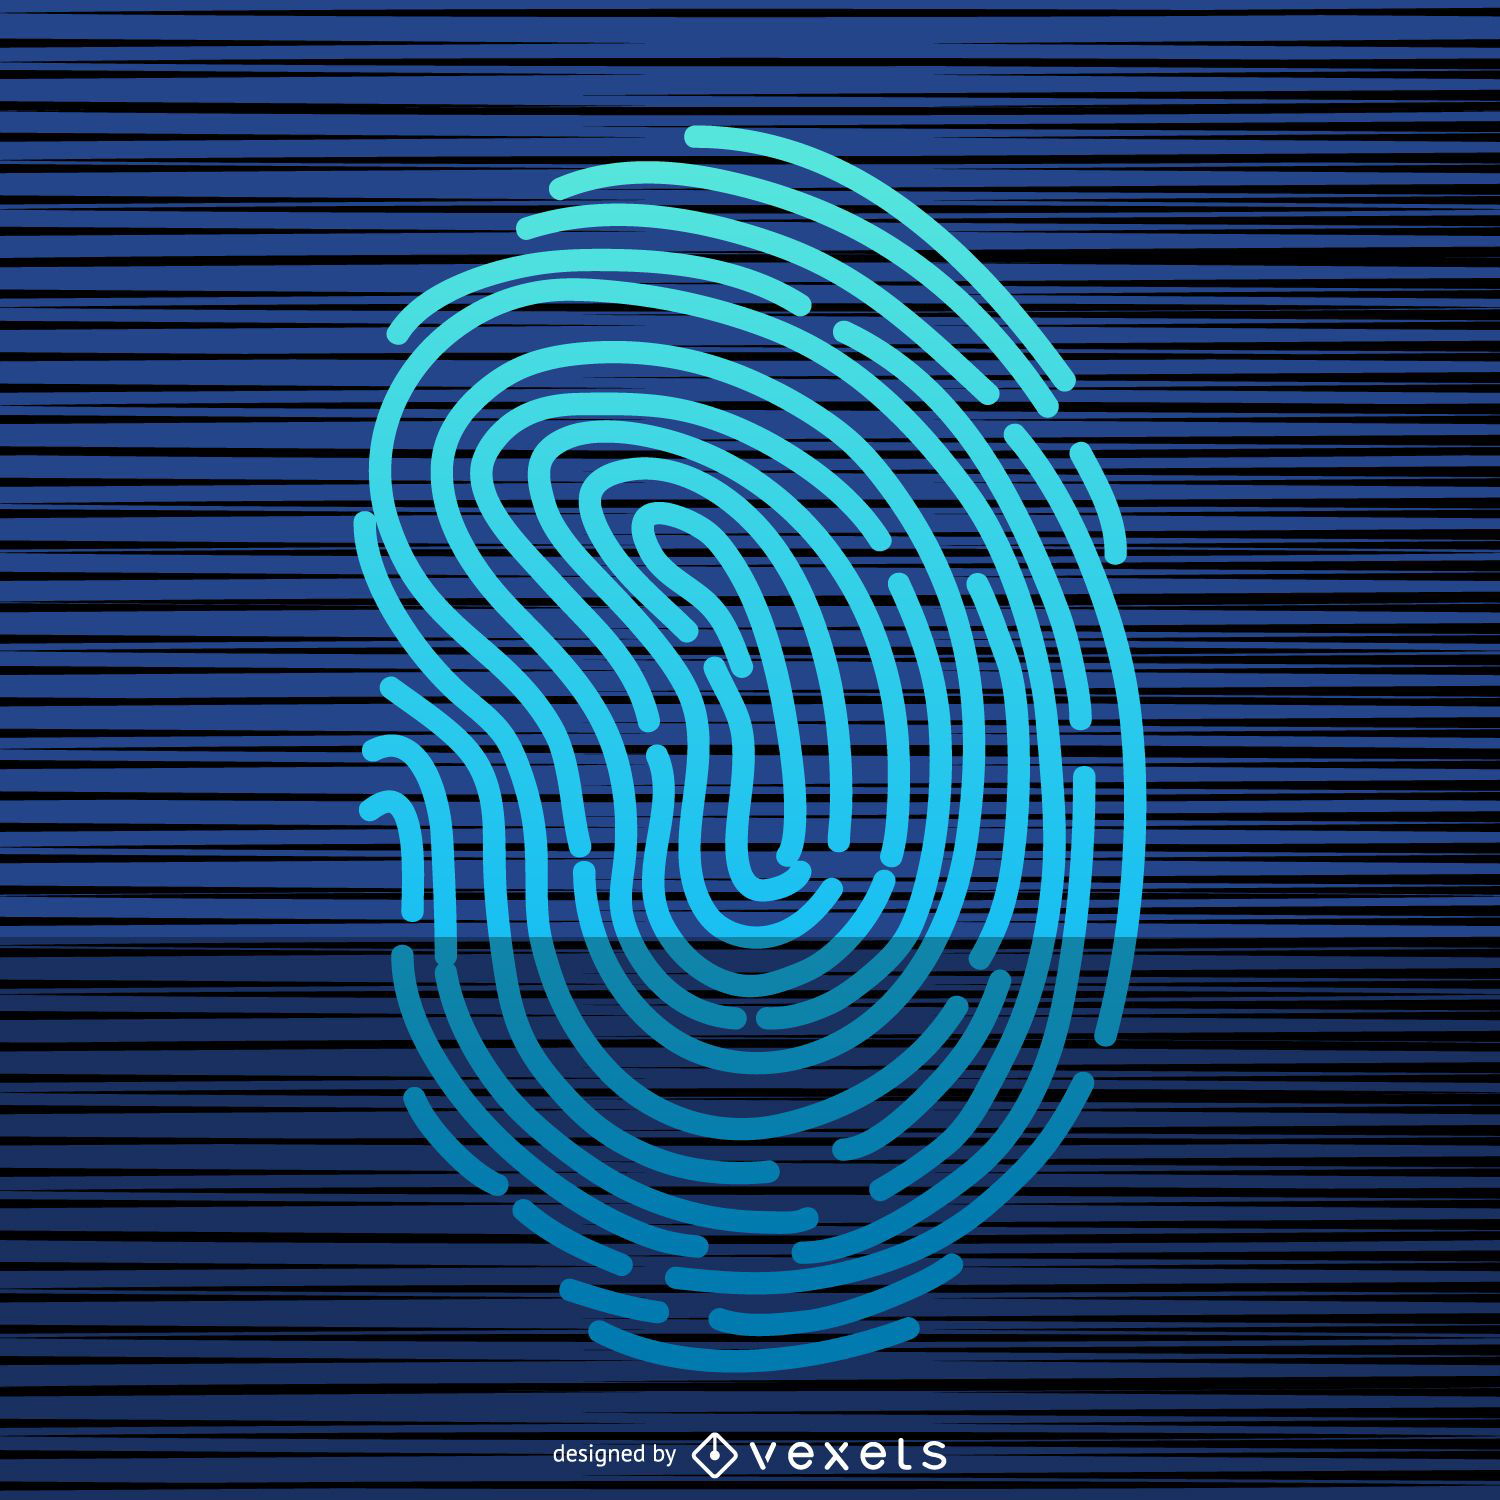 Fingerprint scan illustration